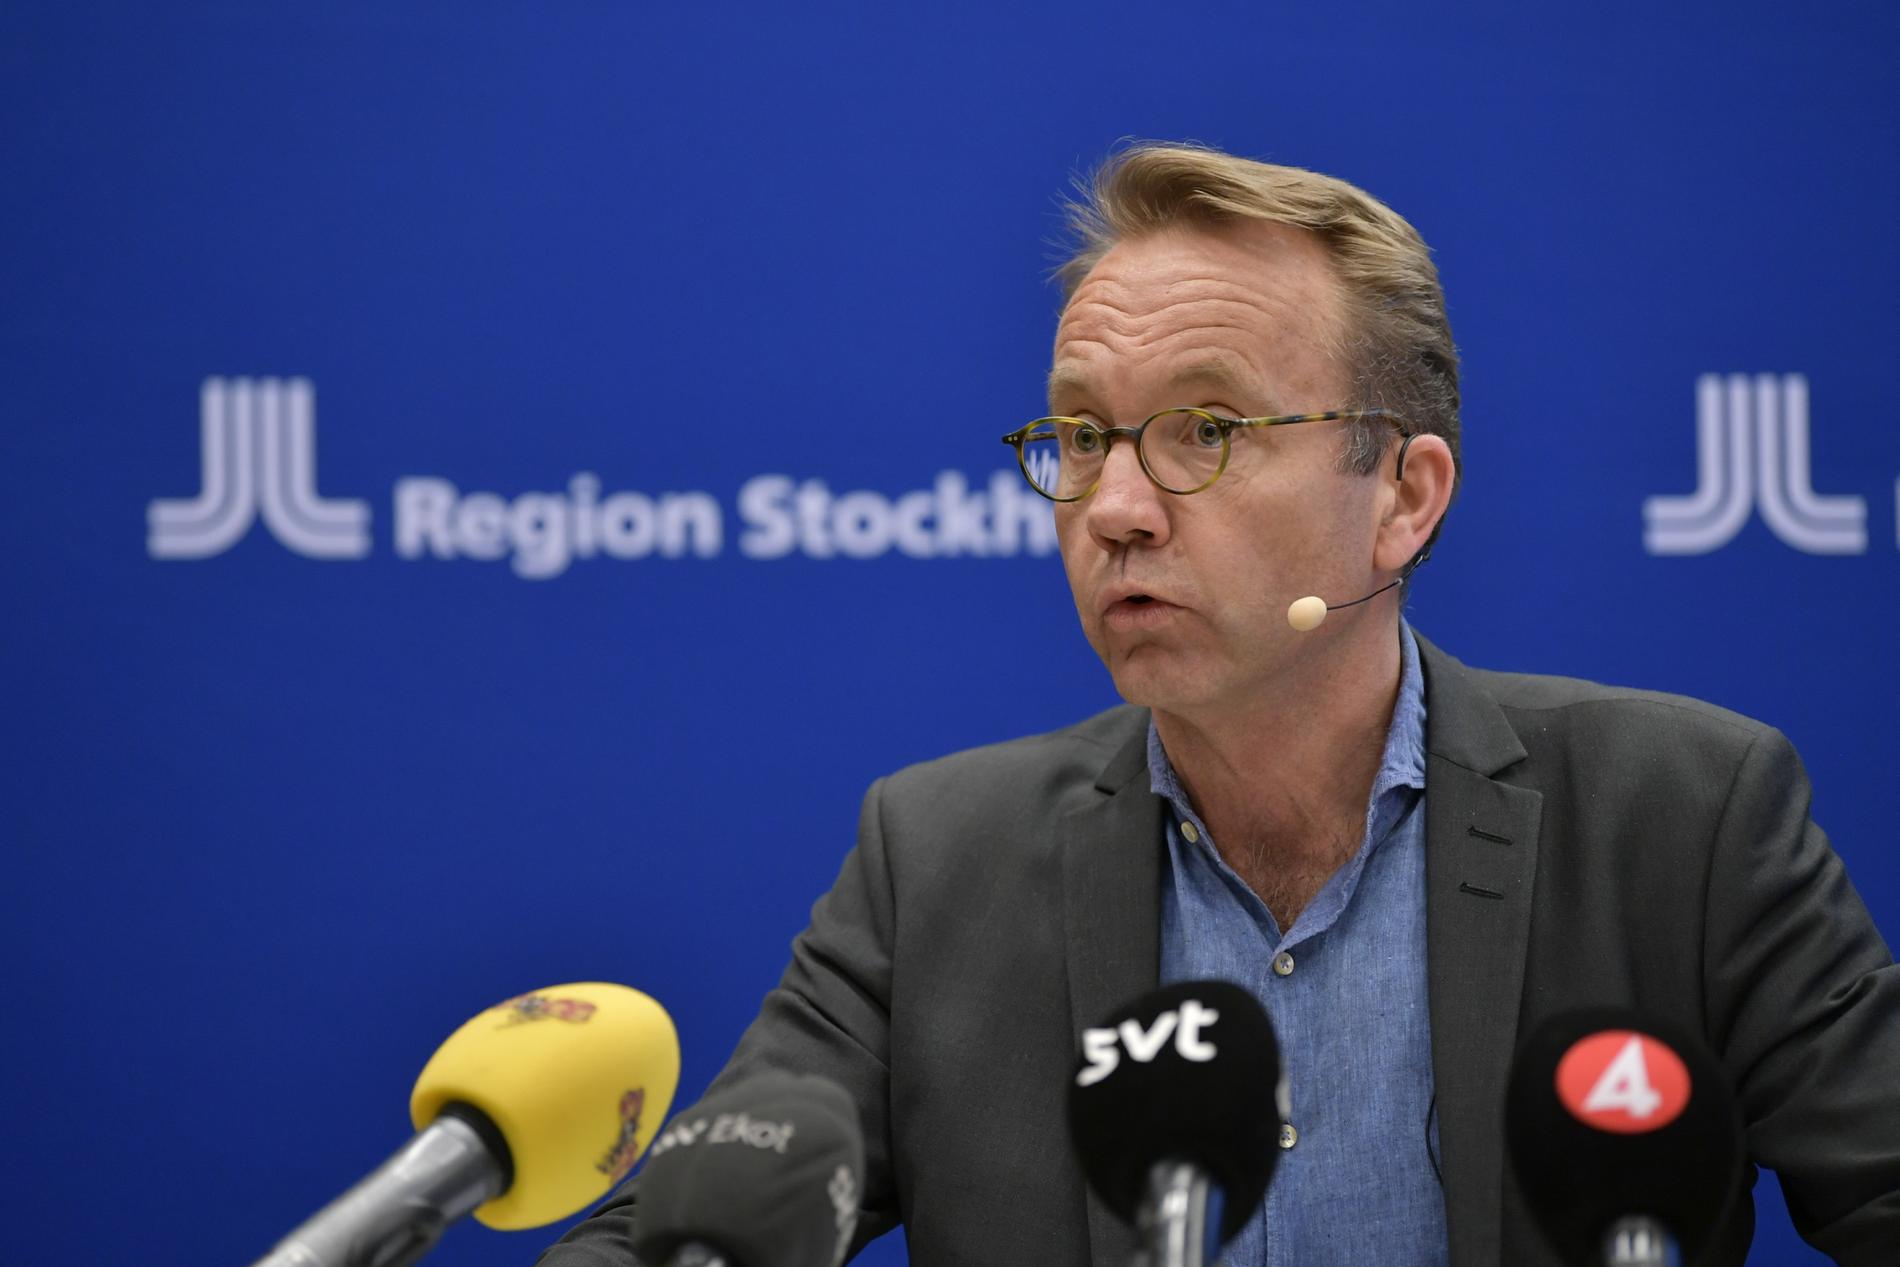 Björn Eriksson, hälso- och sjukvårdsdirektör, under måndagens pressträff med Region Stockholm om det aktuella läget i hälso- och sjukvården med anledning av covid-19.